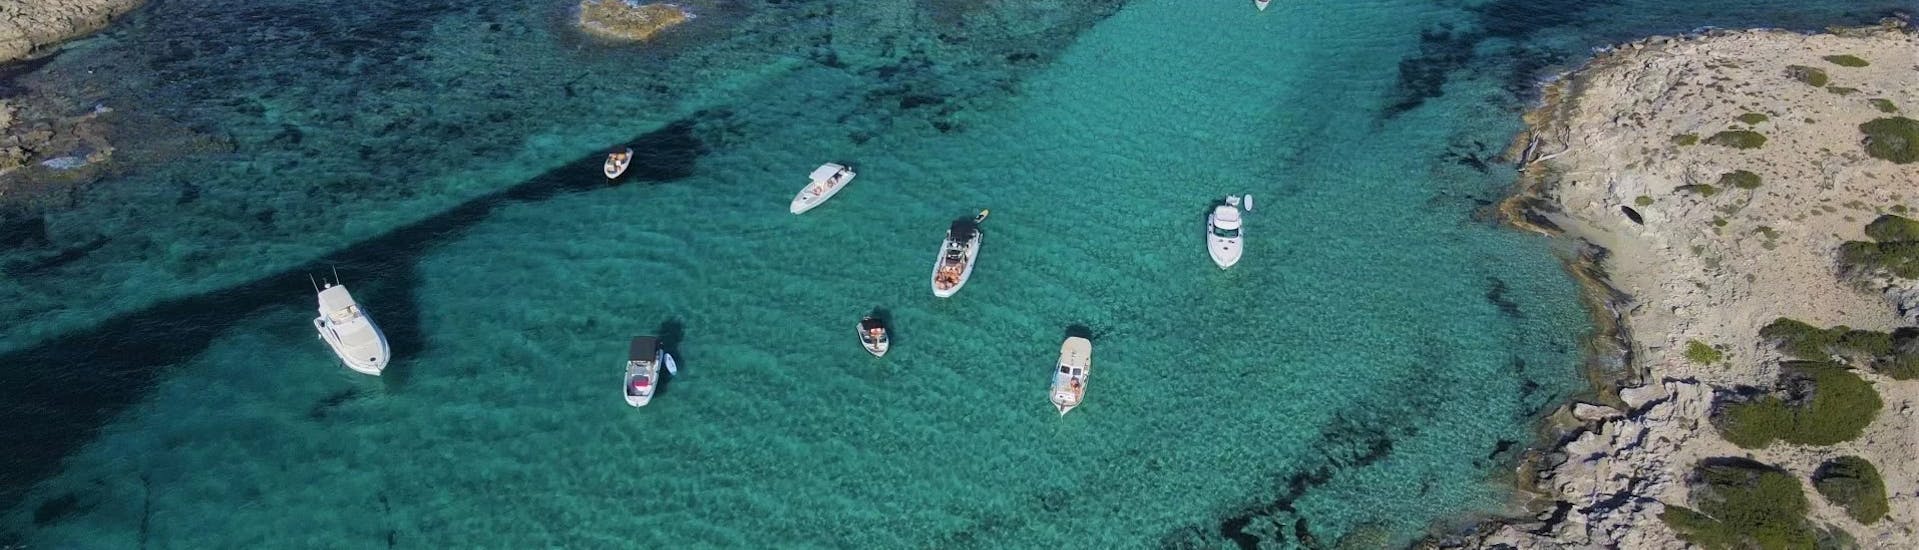 Ansichten einer Bootsvermietung in Santa Eulalia, Ibiza (bis zu 6 Personen) ohne Führerschein mit Eiviboats.